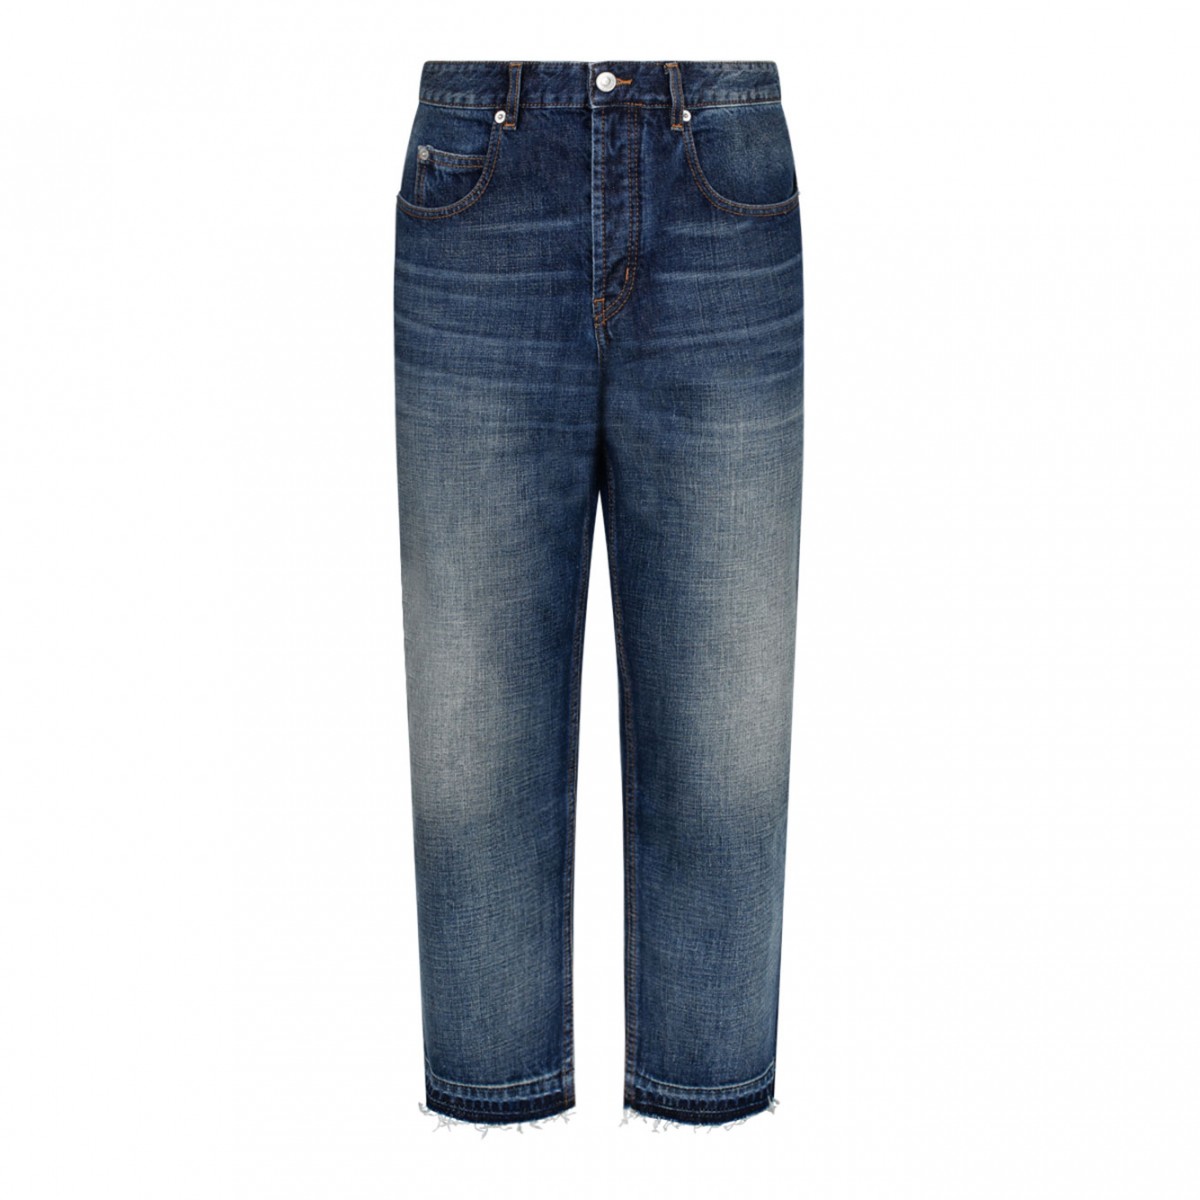 Lacoste Live Straight Cut 5 Pocket Cotton Jeans Blue | Dressinn